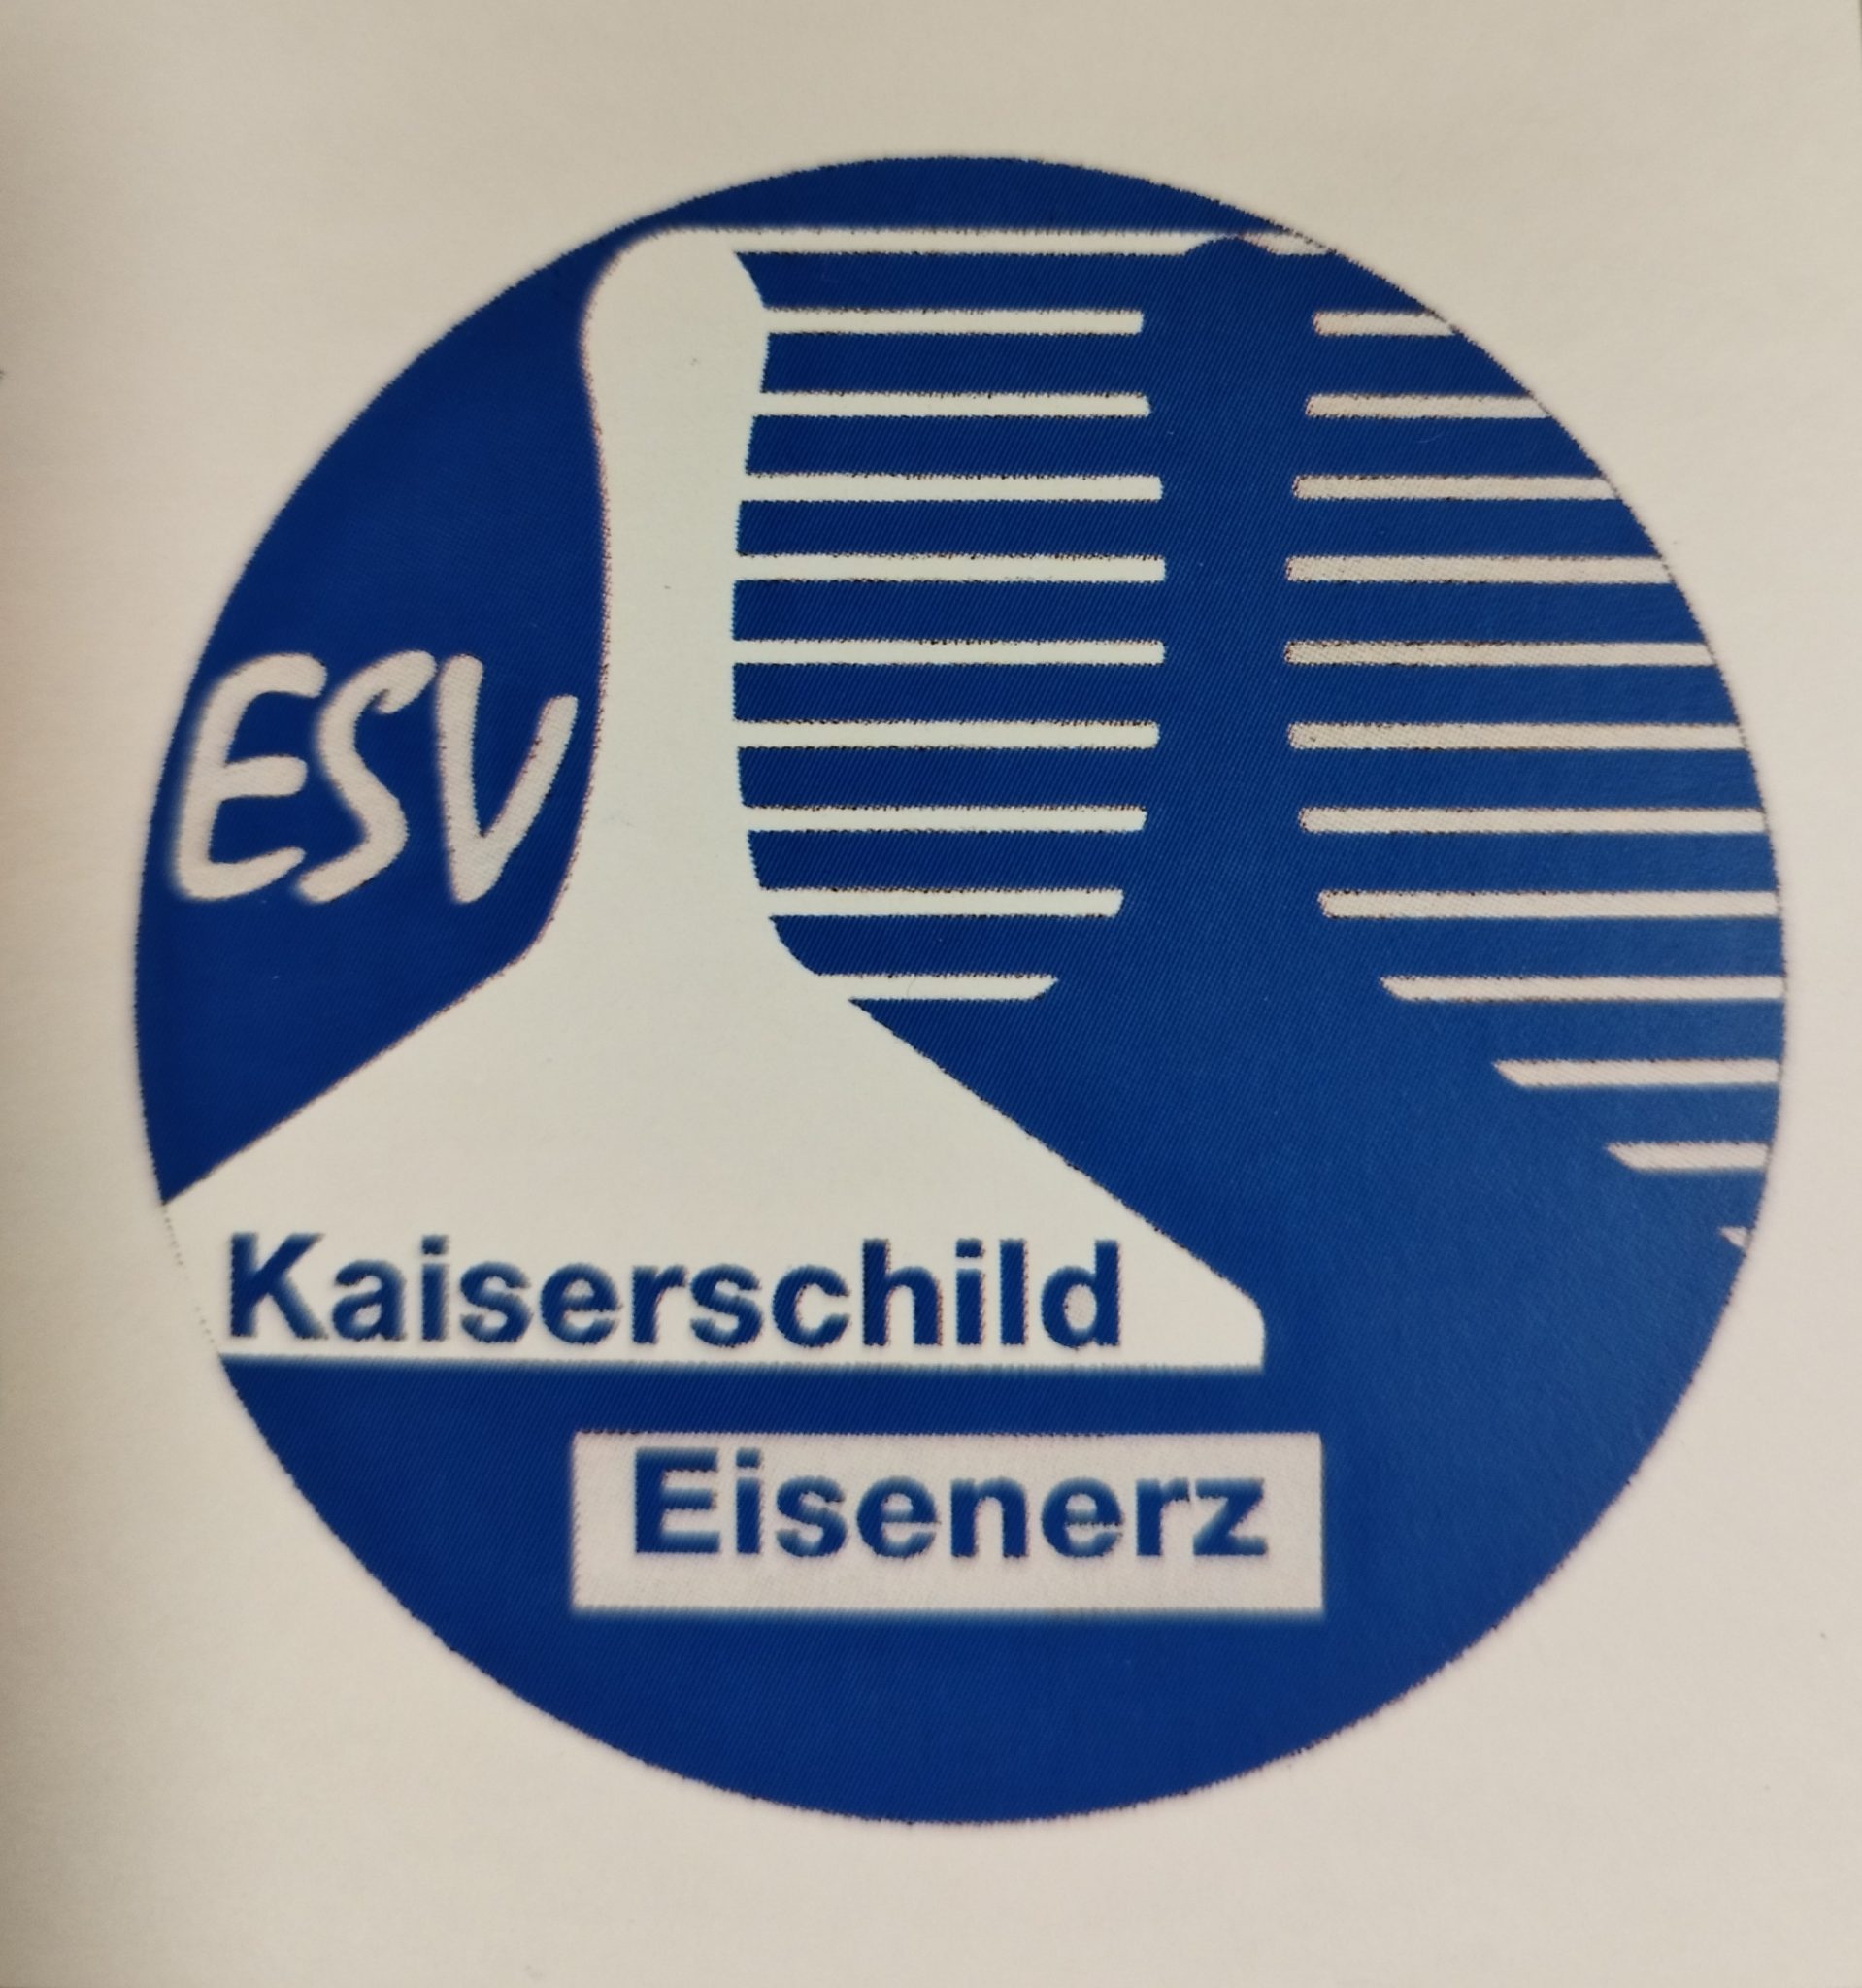 ESV Kaiserschild Eisenerz (ST)